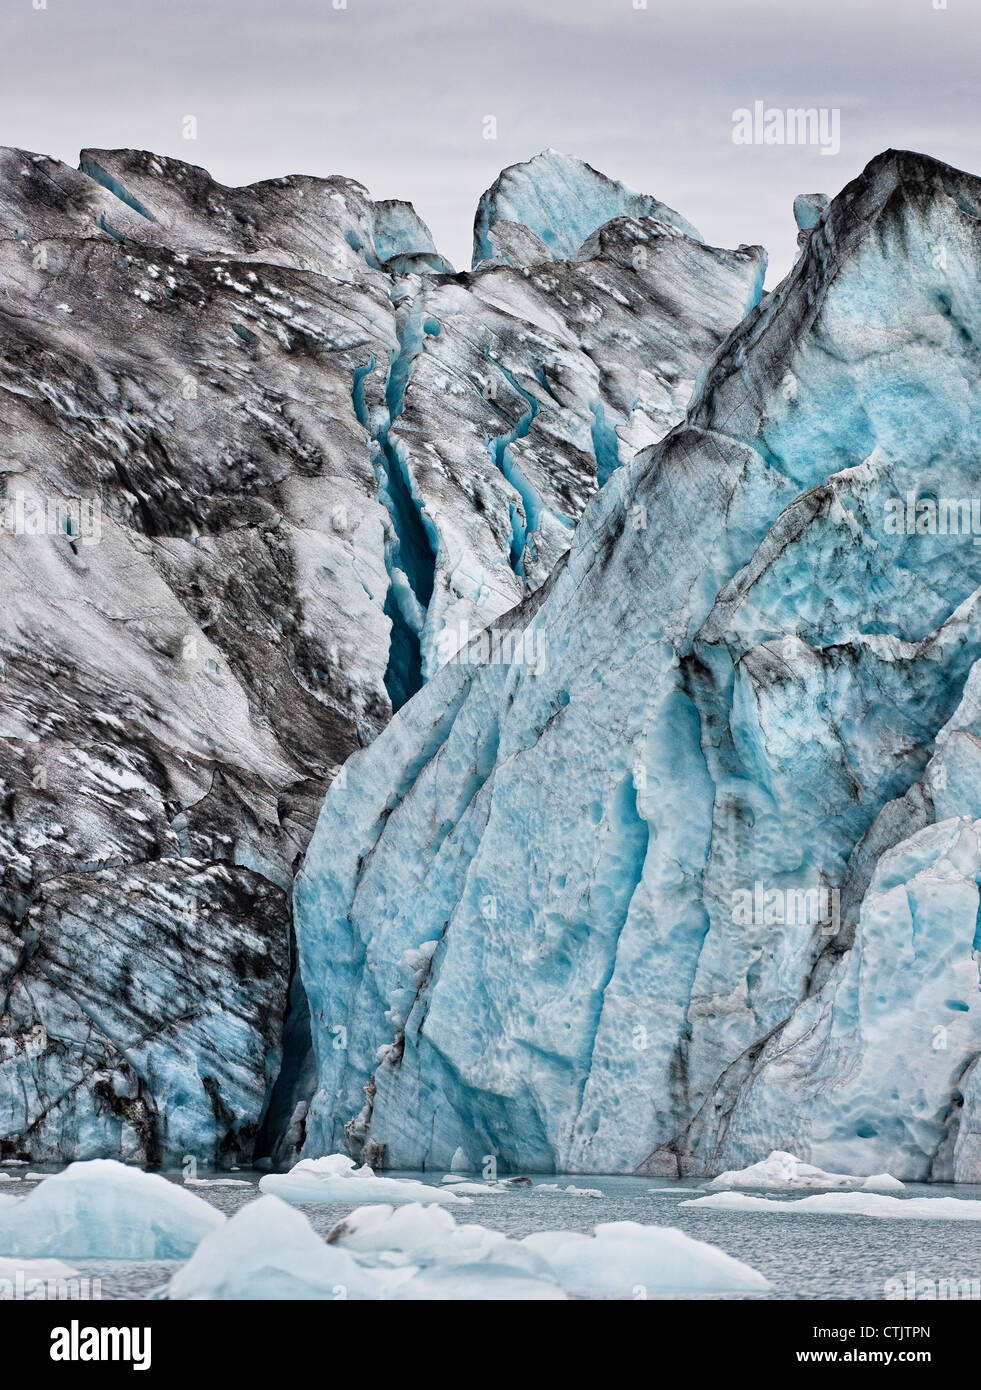 Murs de glace- Jokulsarlon Glacial Lagoon, Breidarmerkurjokull glacier Vatnajokull, glacière, à l'Islande Banque D'Images